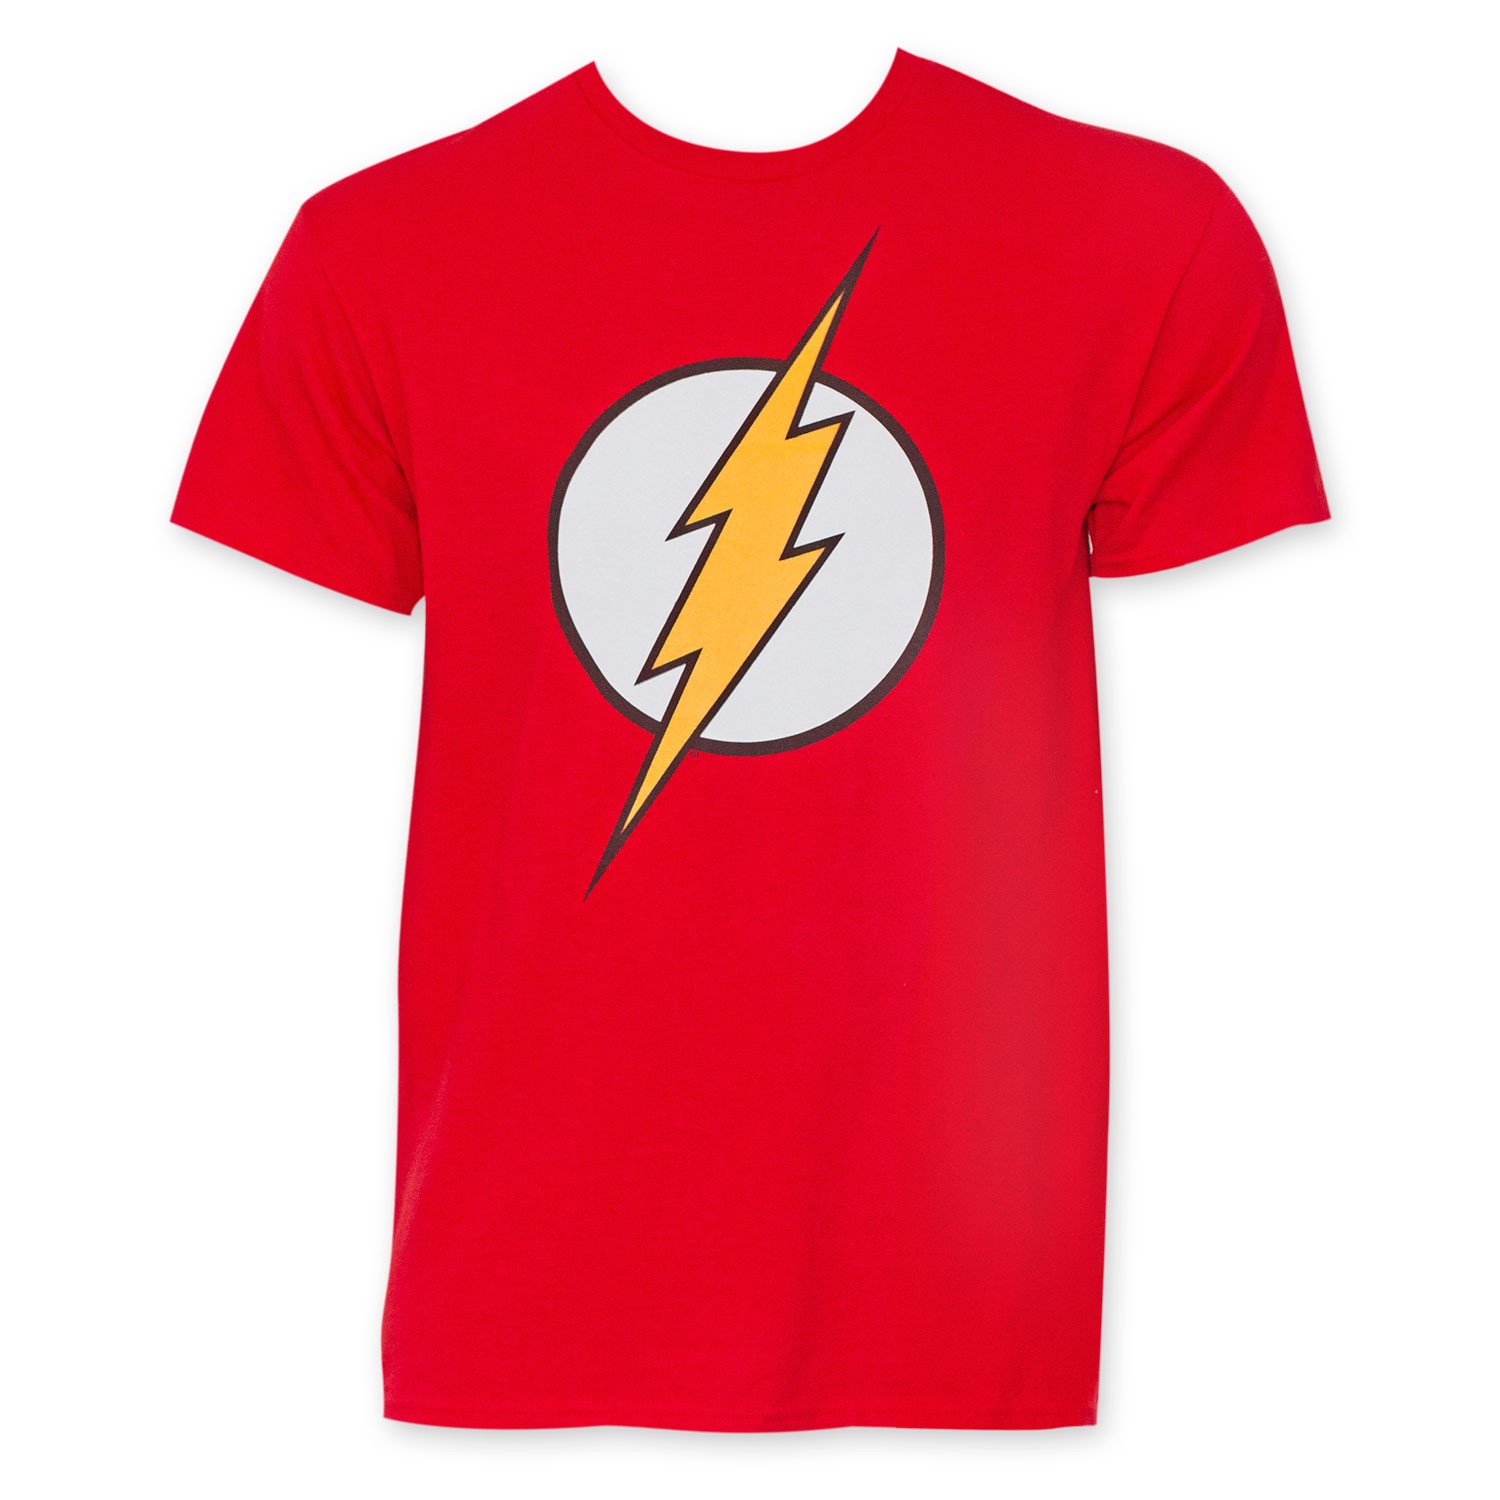 Target flash. DC Flash t-Shirt s16. Футболка флеша дорогая. Футболка с логотипом флеша и молниями. Flash Emblem t-Shirt.